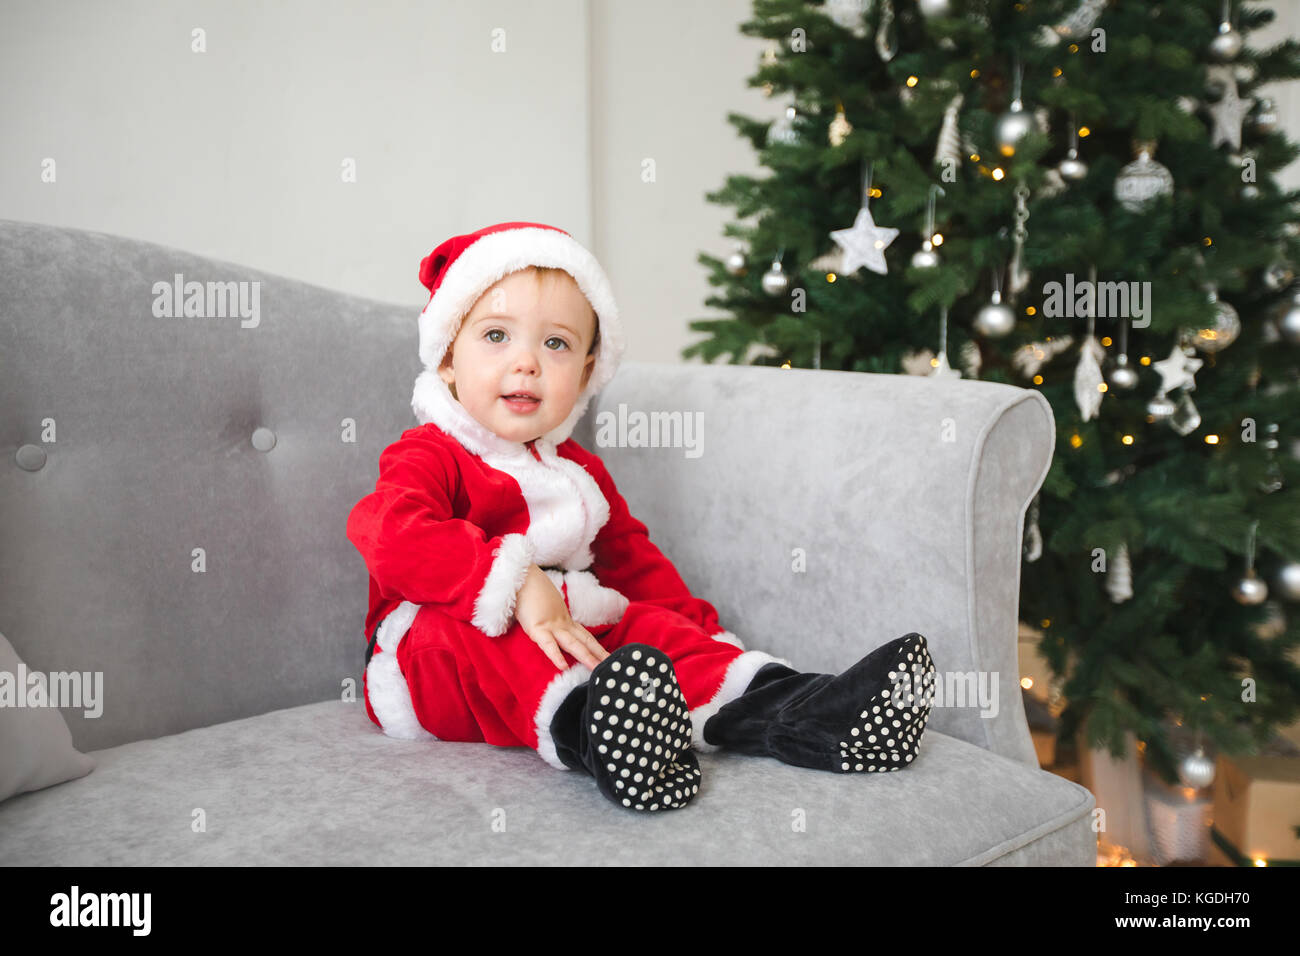 Baby in santa Répondre à s'asseoir sur un canapé avec arbre de Noël Banque D'Images